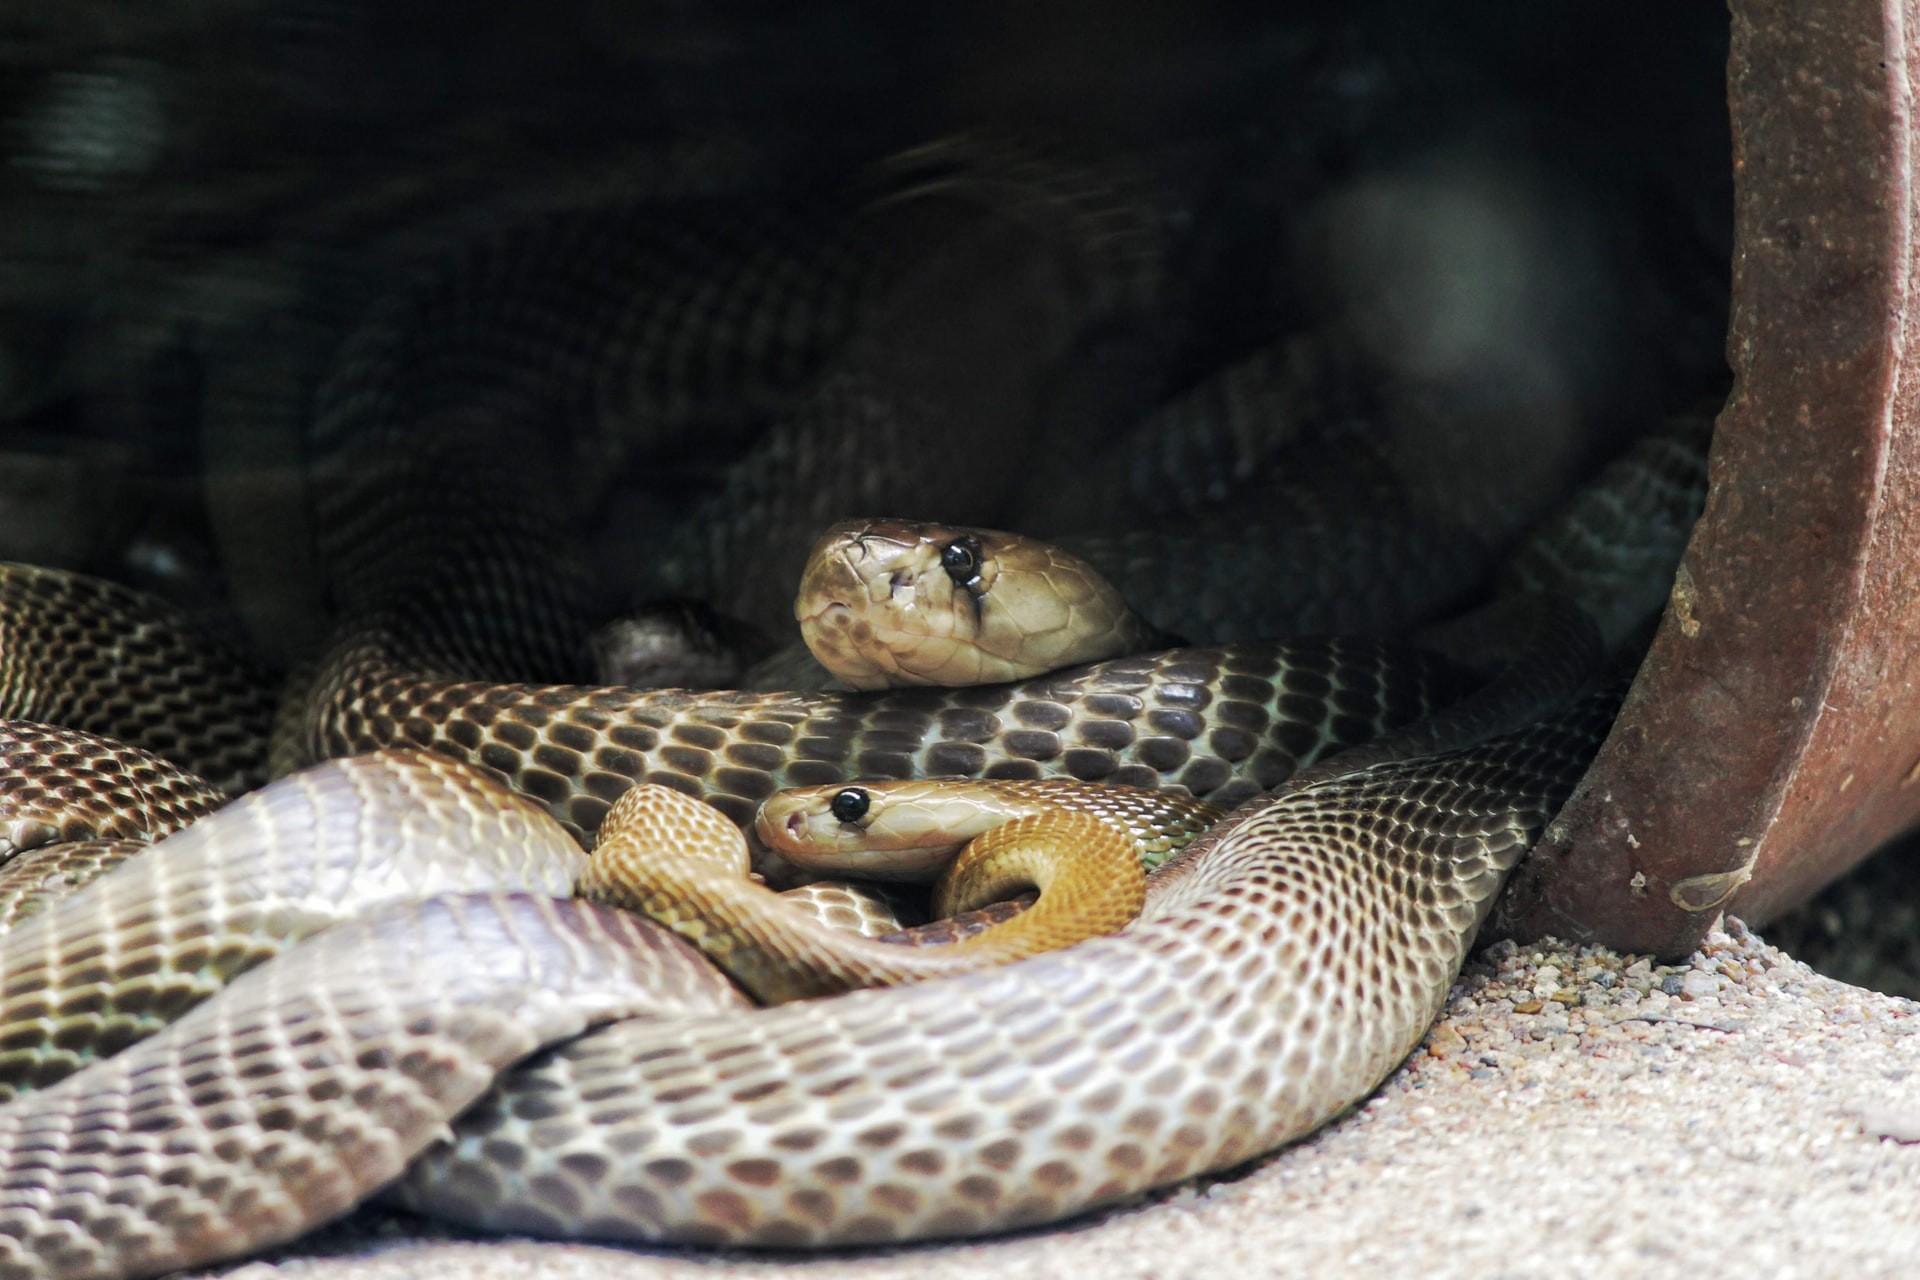 Cientistas observaram que cobras gostam de andar em grupos com outras cobras (Foto: pavan adepu/Unsplash)